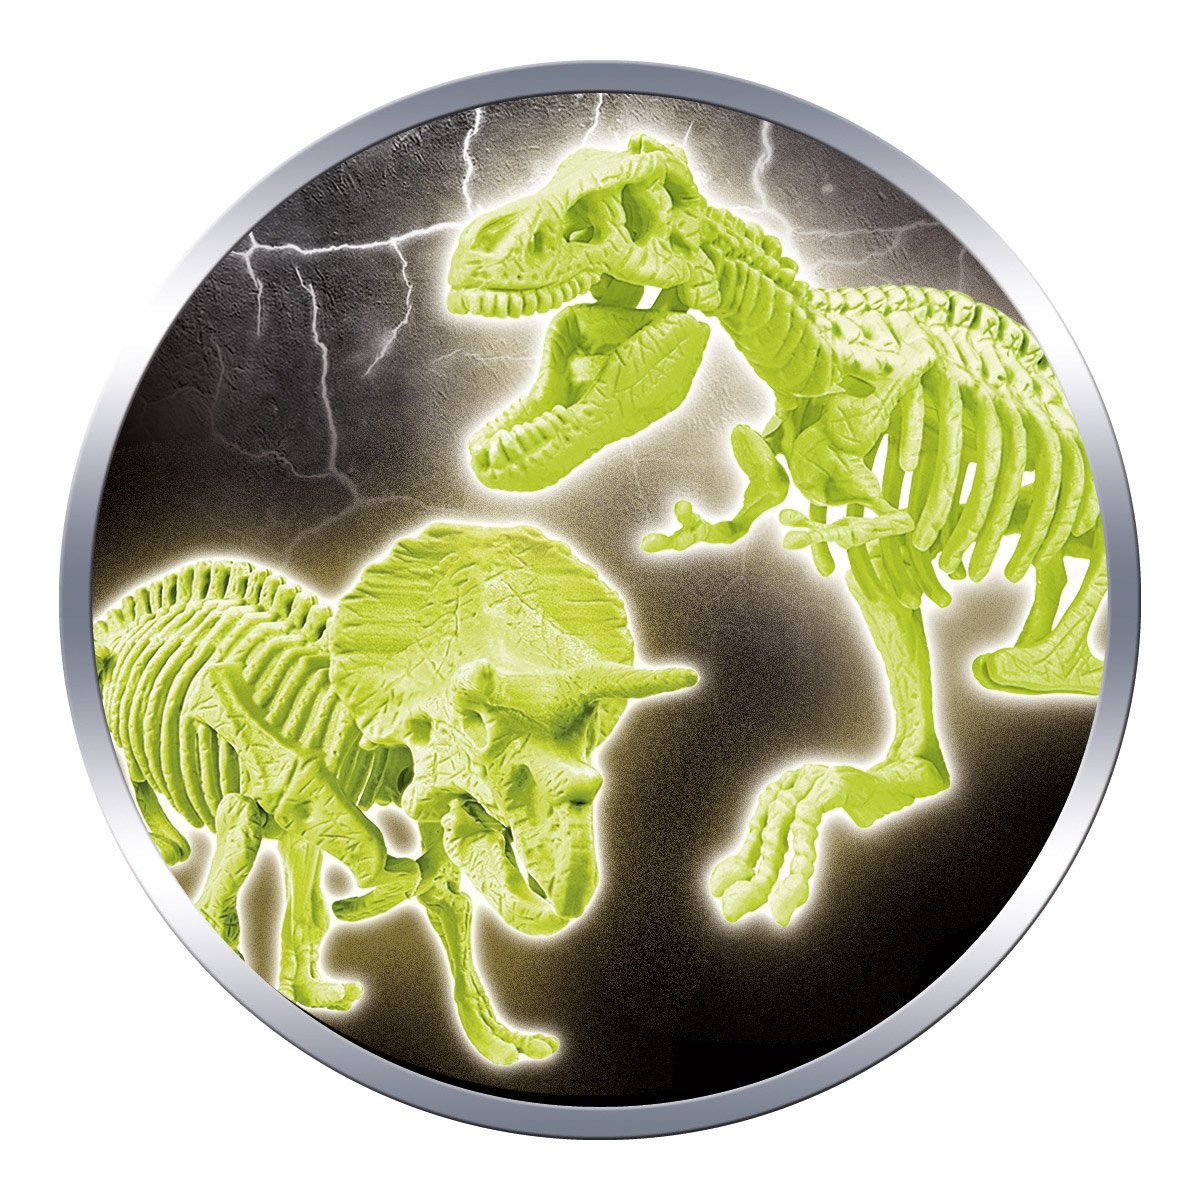 Archéo-ludic T-Rex et Tricératops